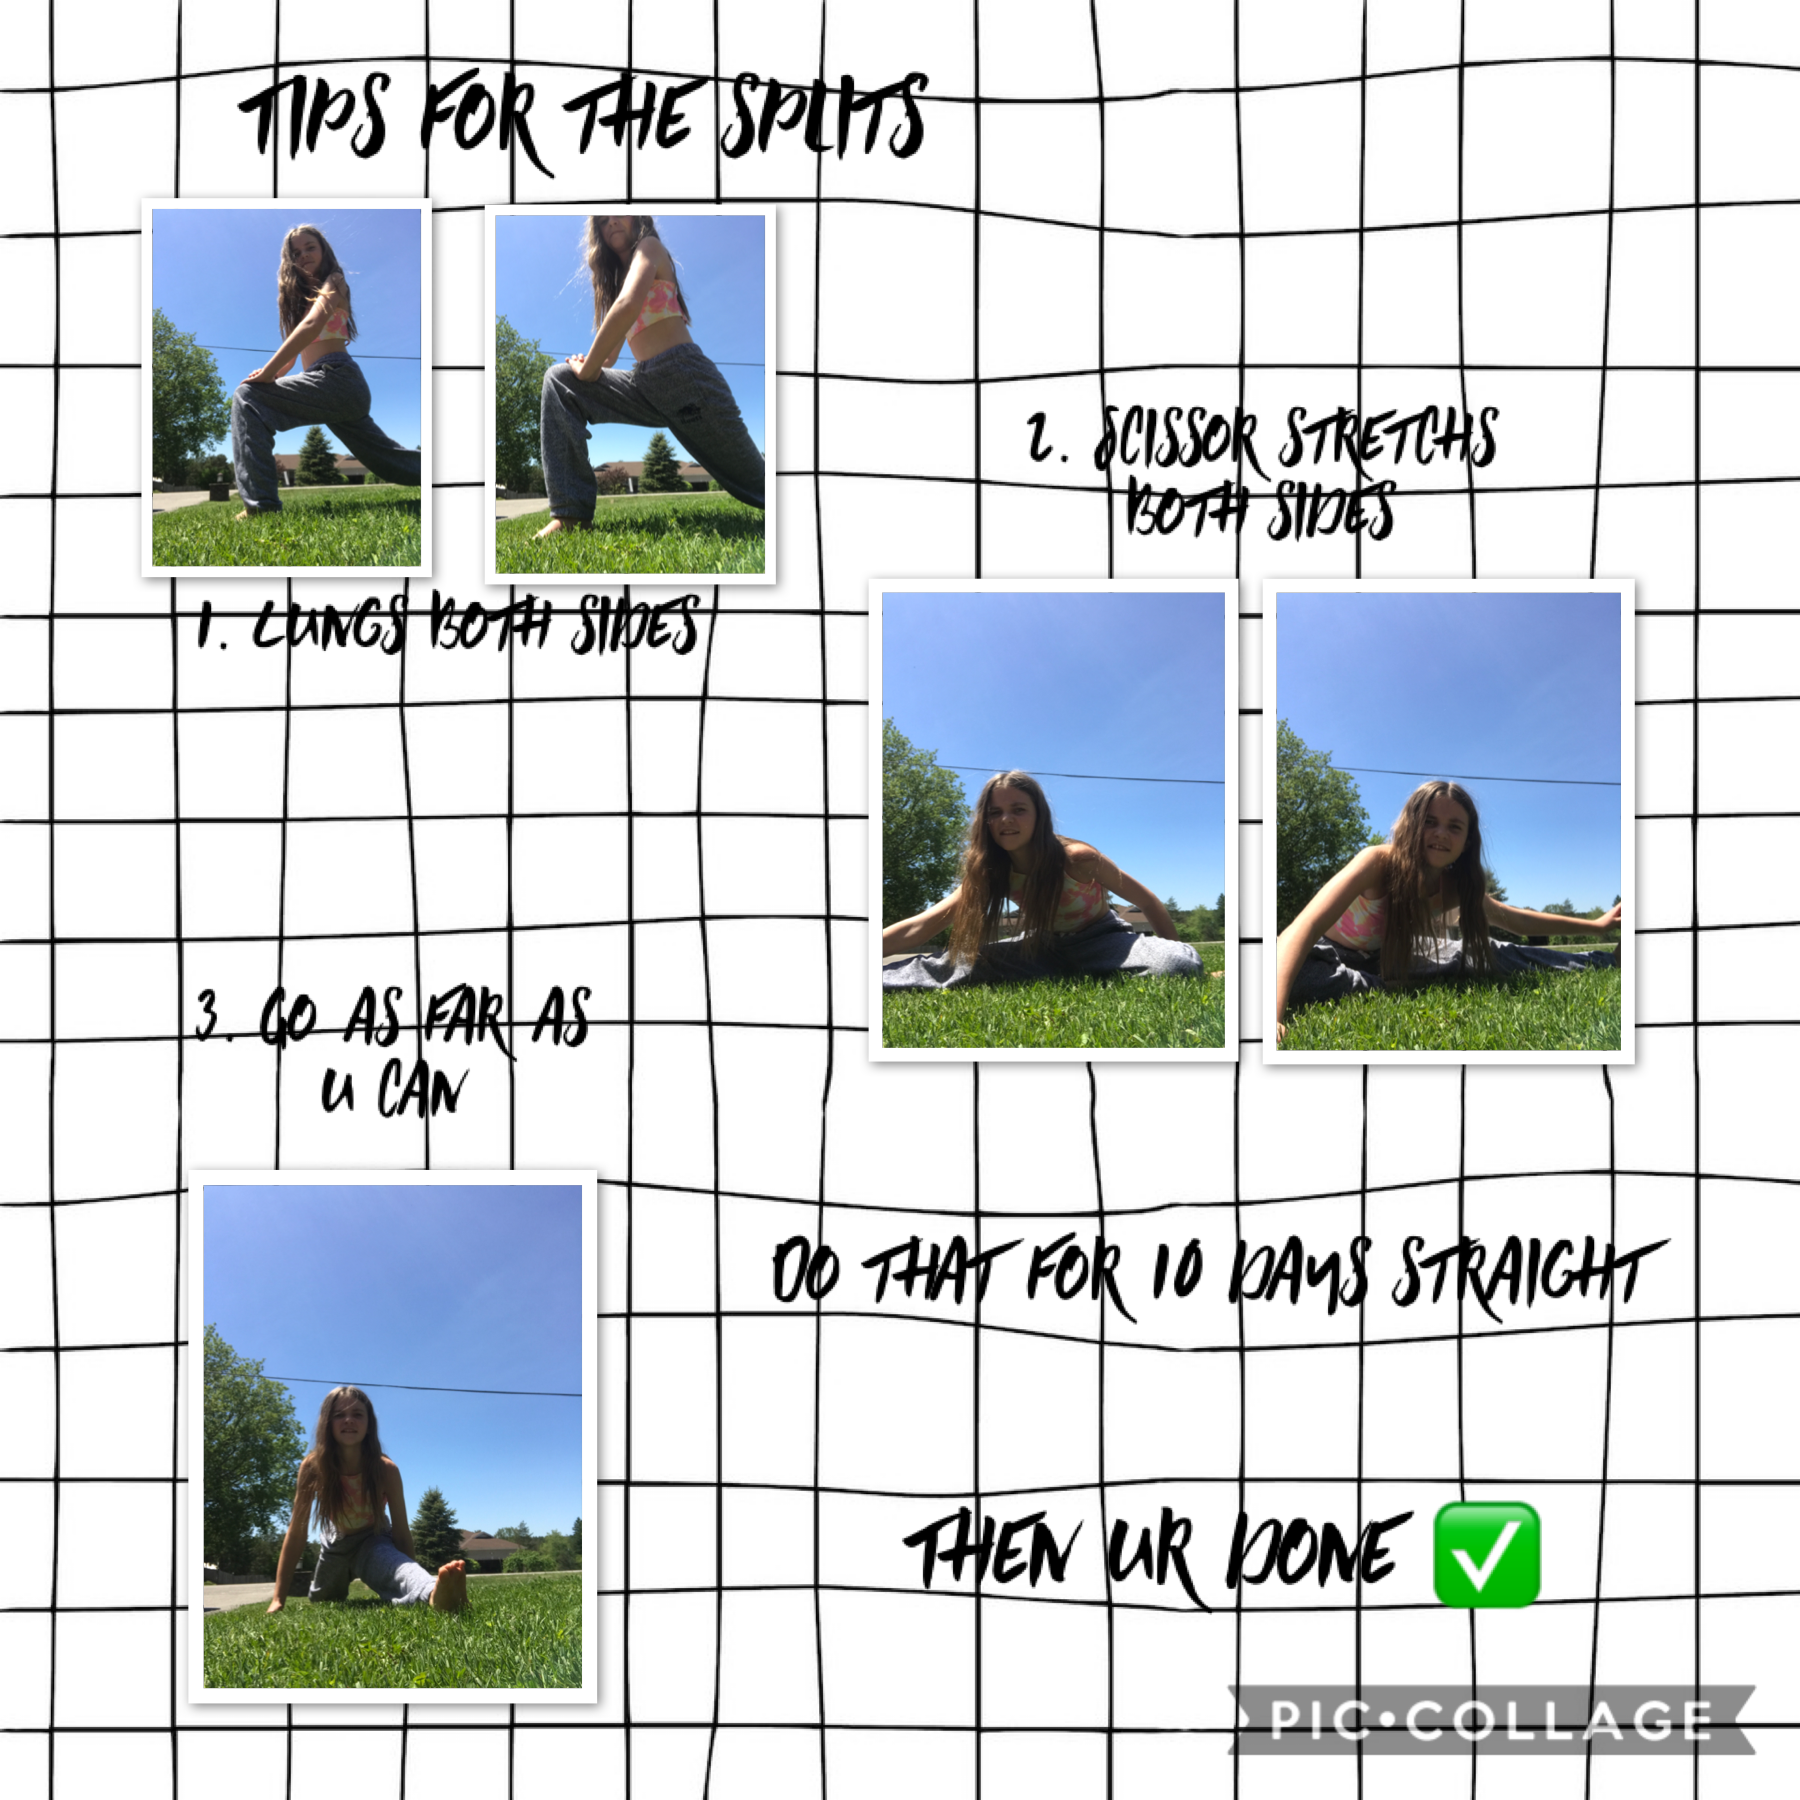 Tips for the splits